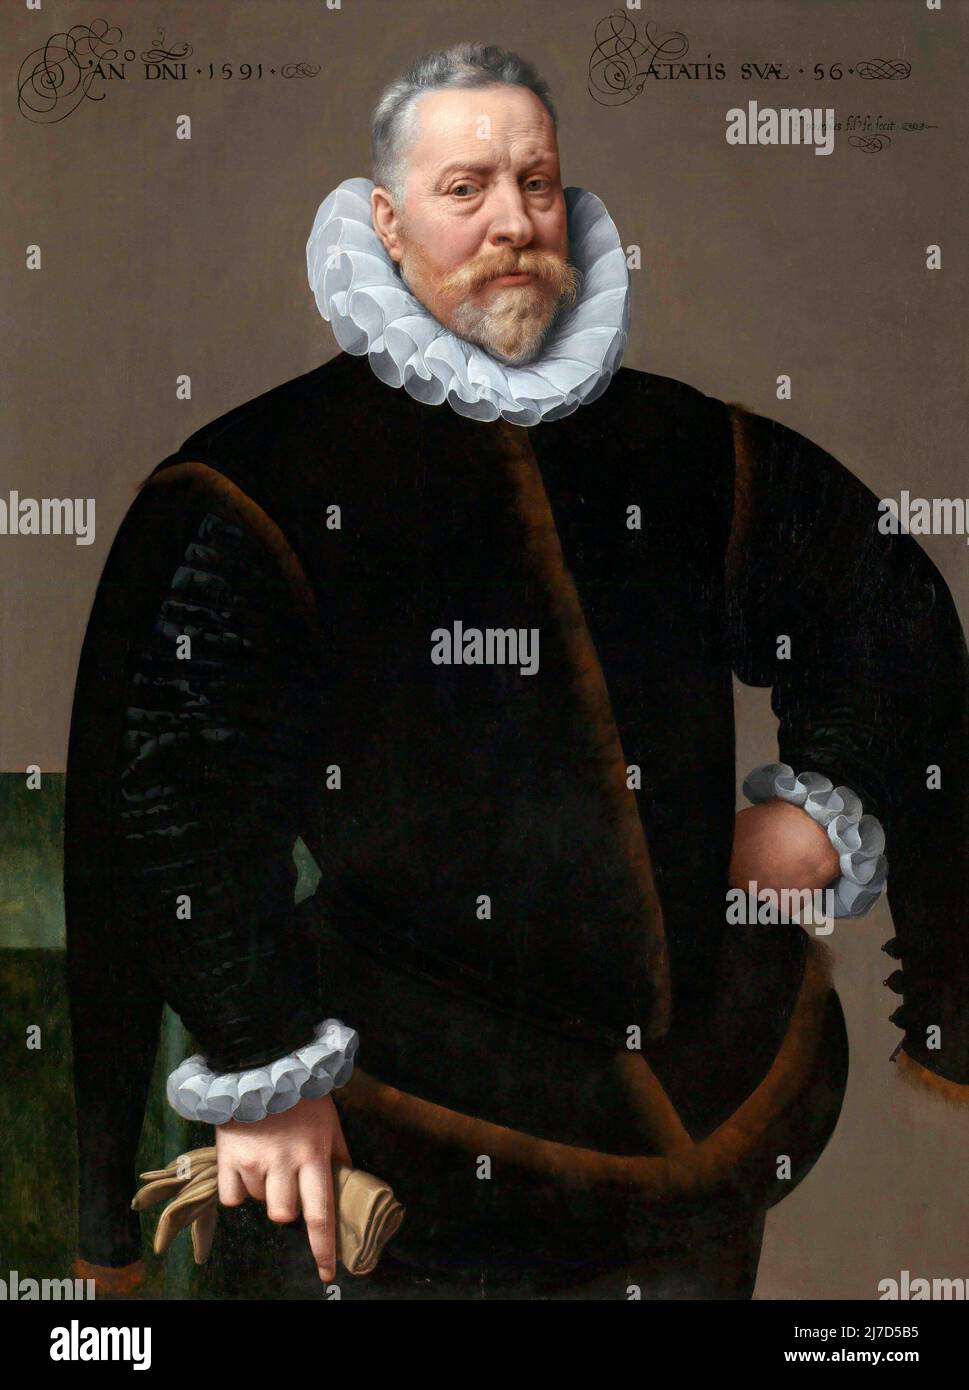 Porträt eines unbekannten Mannes, 56 Jahre, von Frans Pourbus dem Jüngeren (1569-1622), Öl auf Holz, 1591 Stockfoto